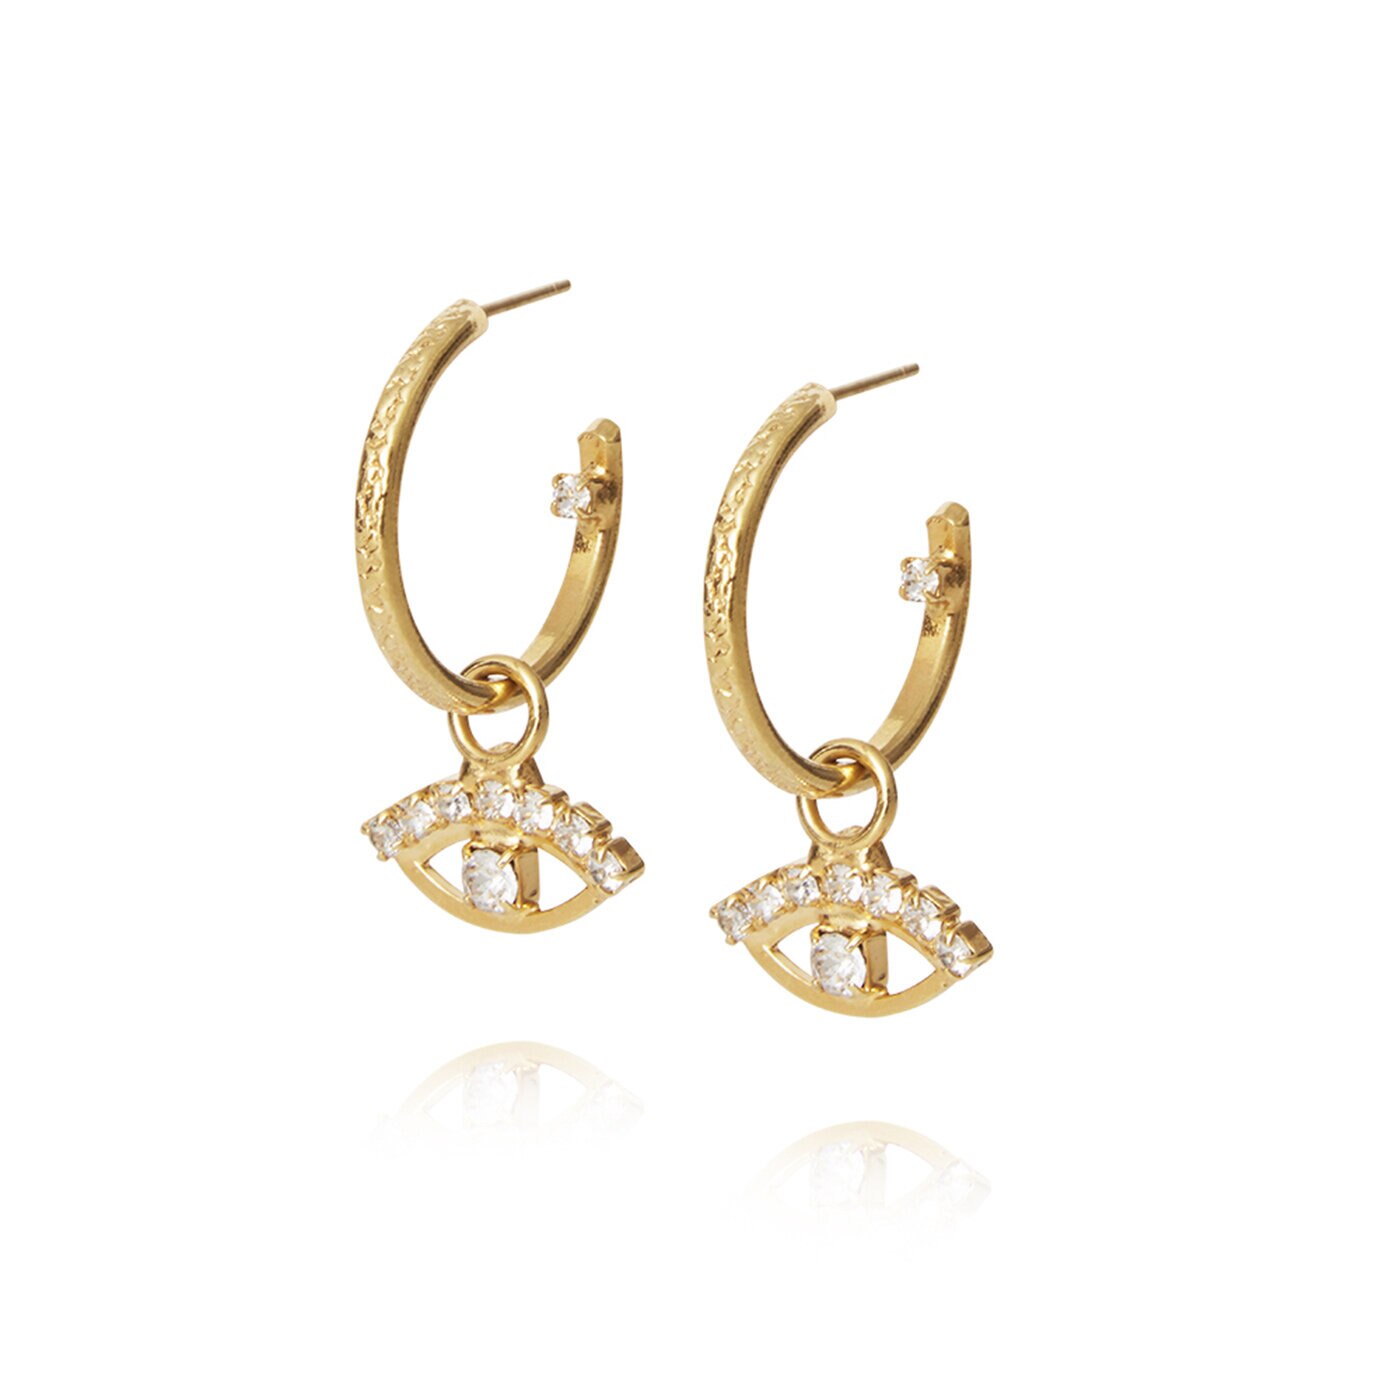 Petite Greek Eye Earrings Gold / Crystal